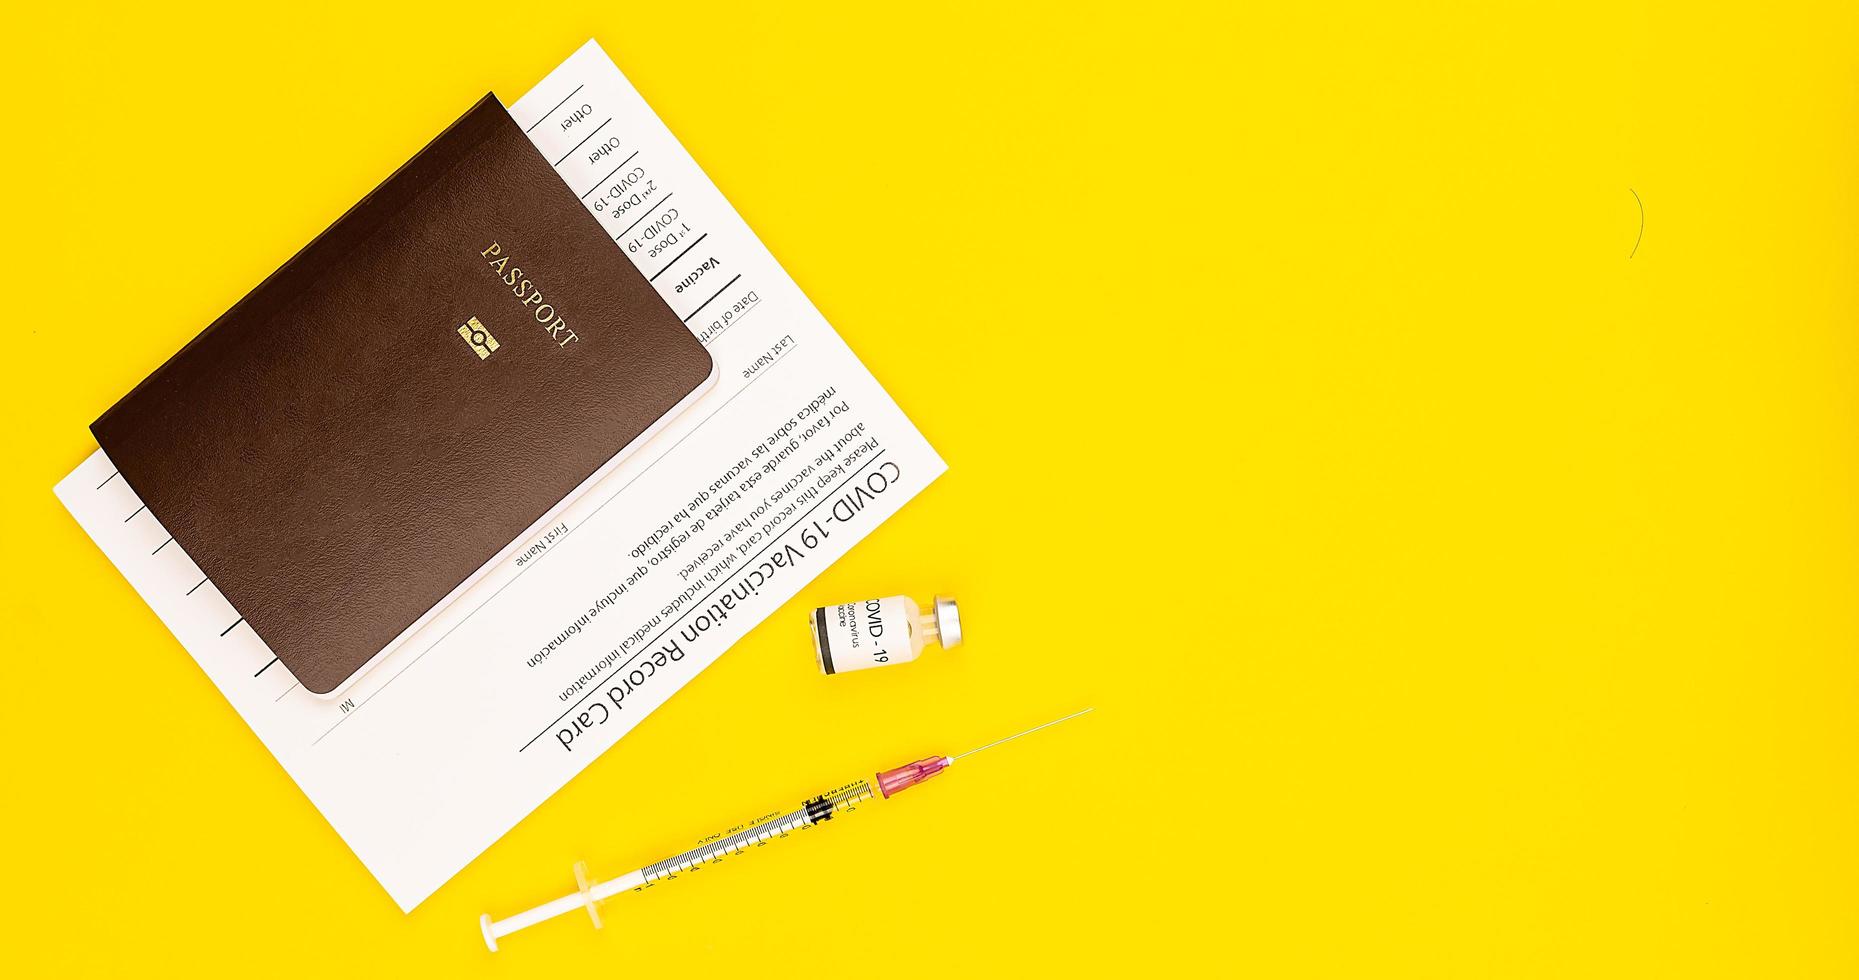 covid-19 vaccinerat journalkortsintyg och pass med coronavirusvaccinflaska och spruta ihopsatt på gul bakgrund med kopia utrymme. ovanifrån och platt låg skott foto